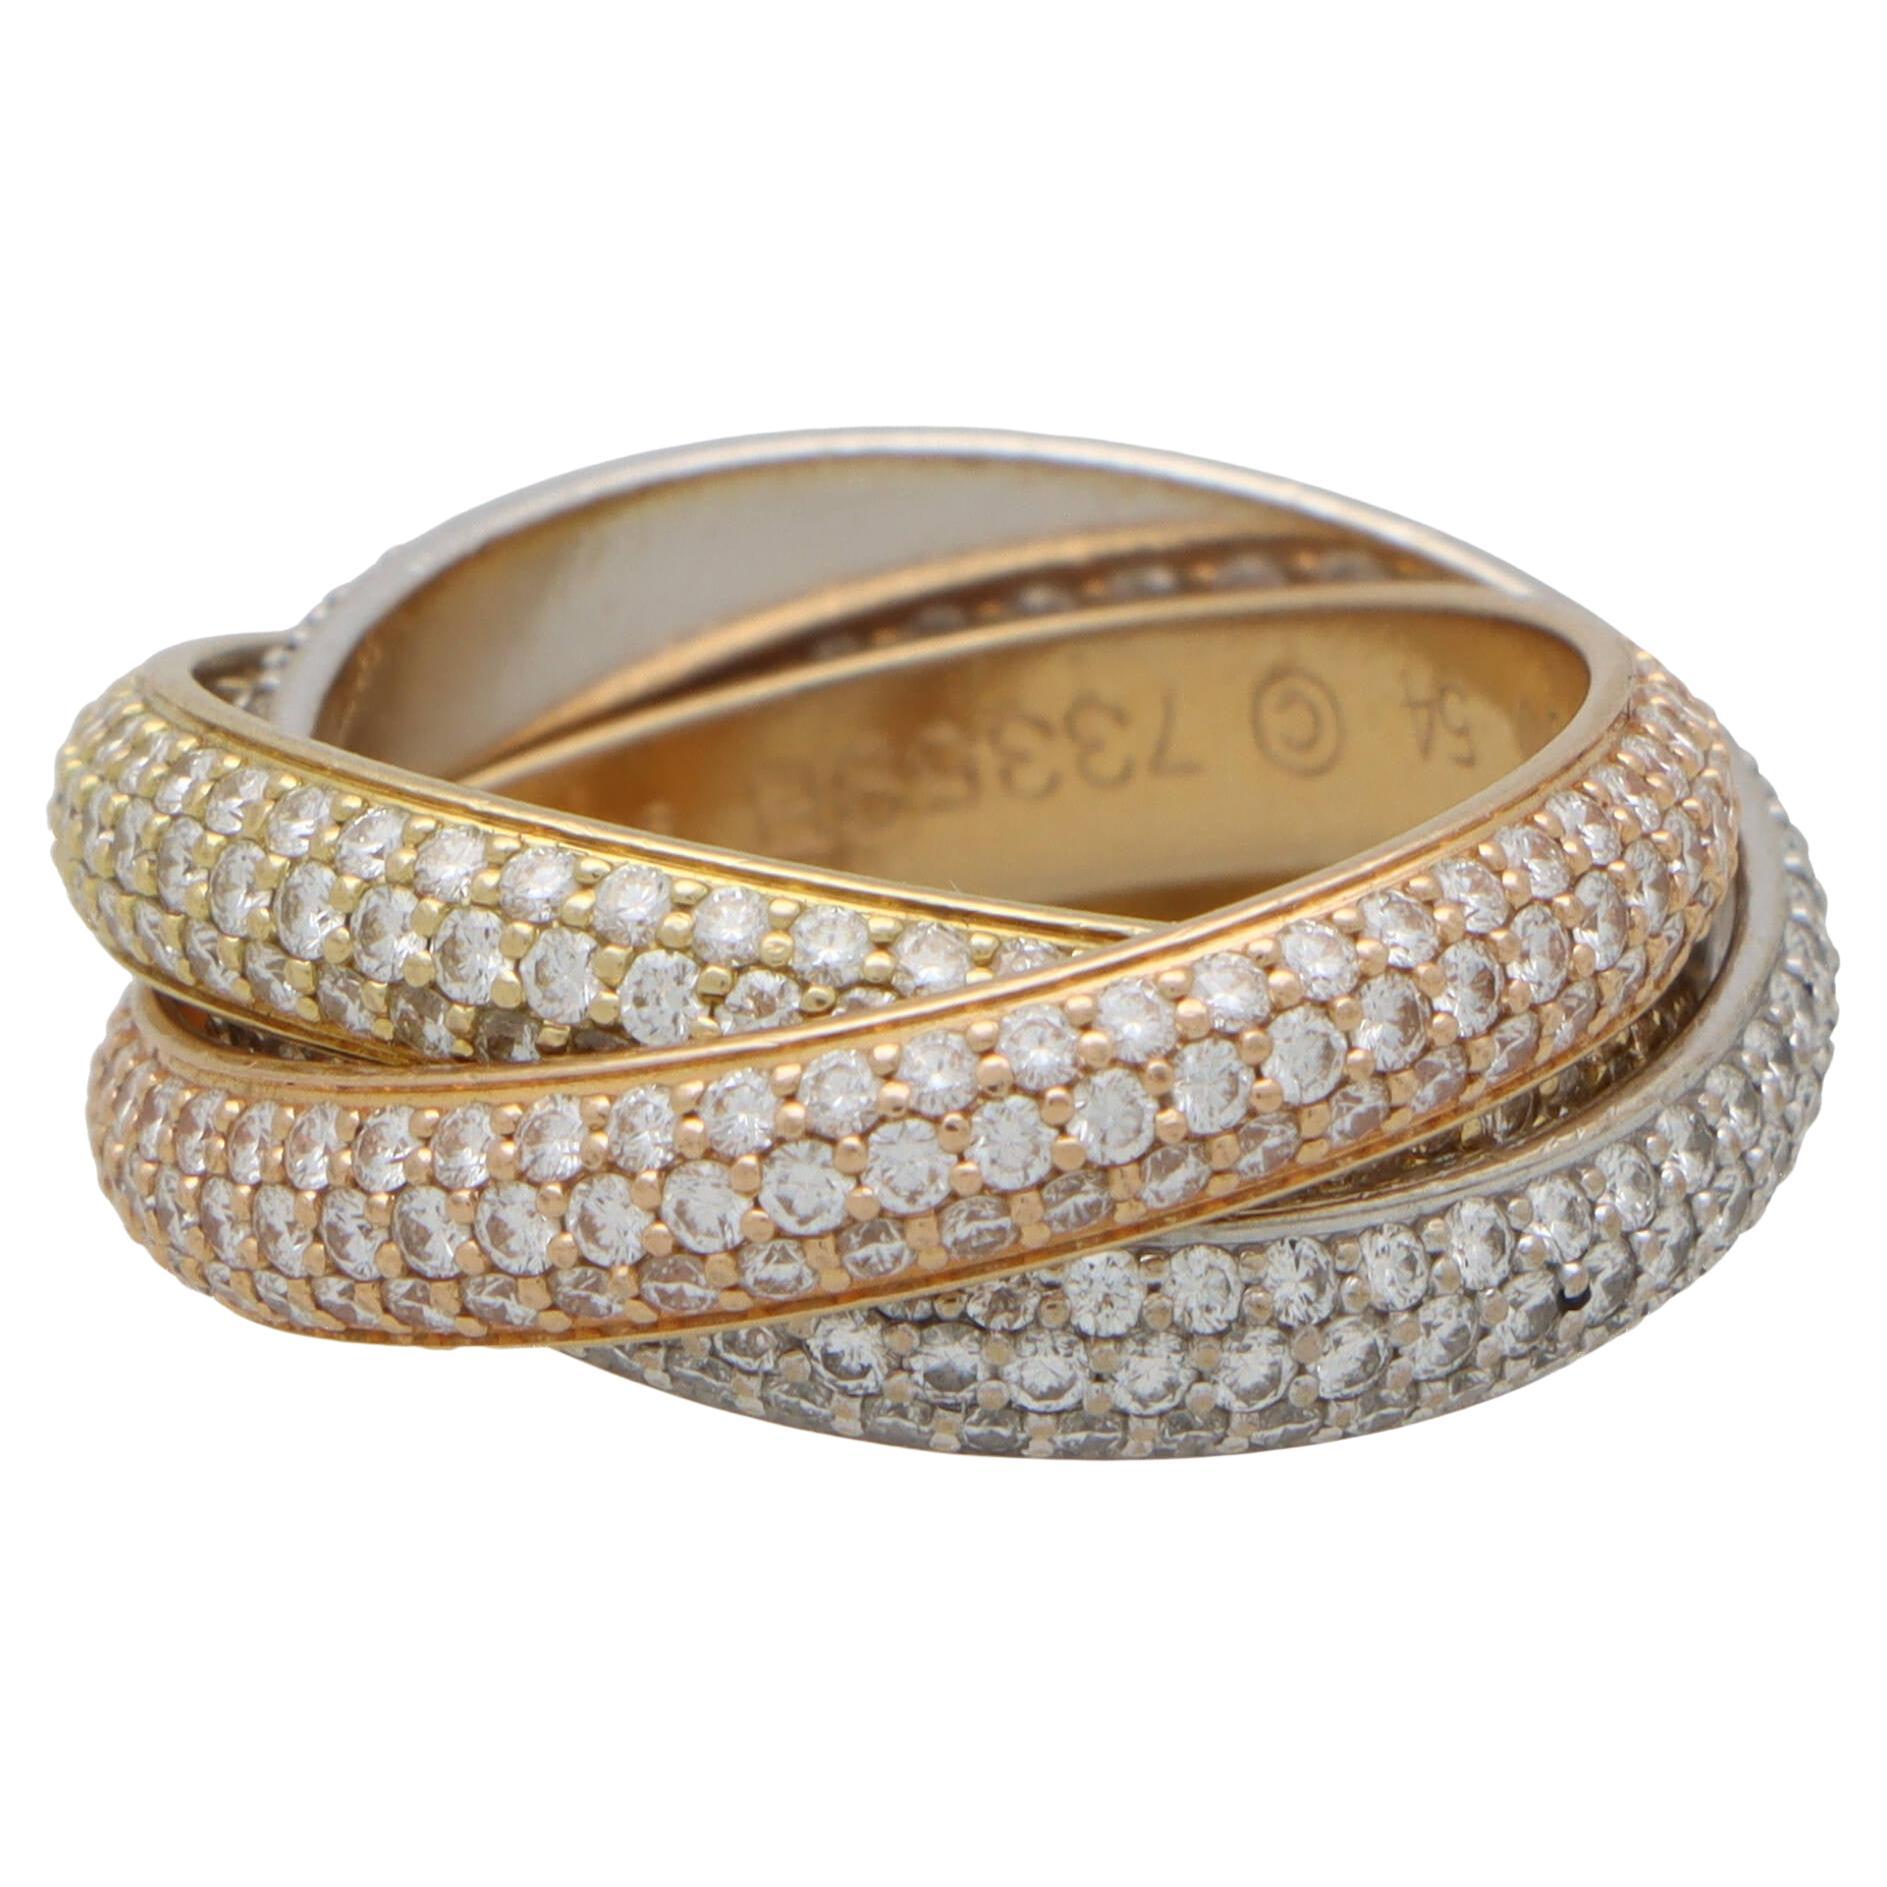 Cartier Bague Trinity classique vintage en or 18 carats avec diamants